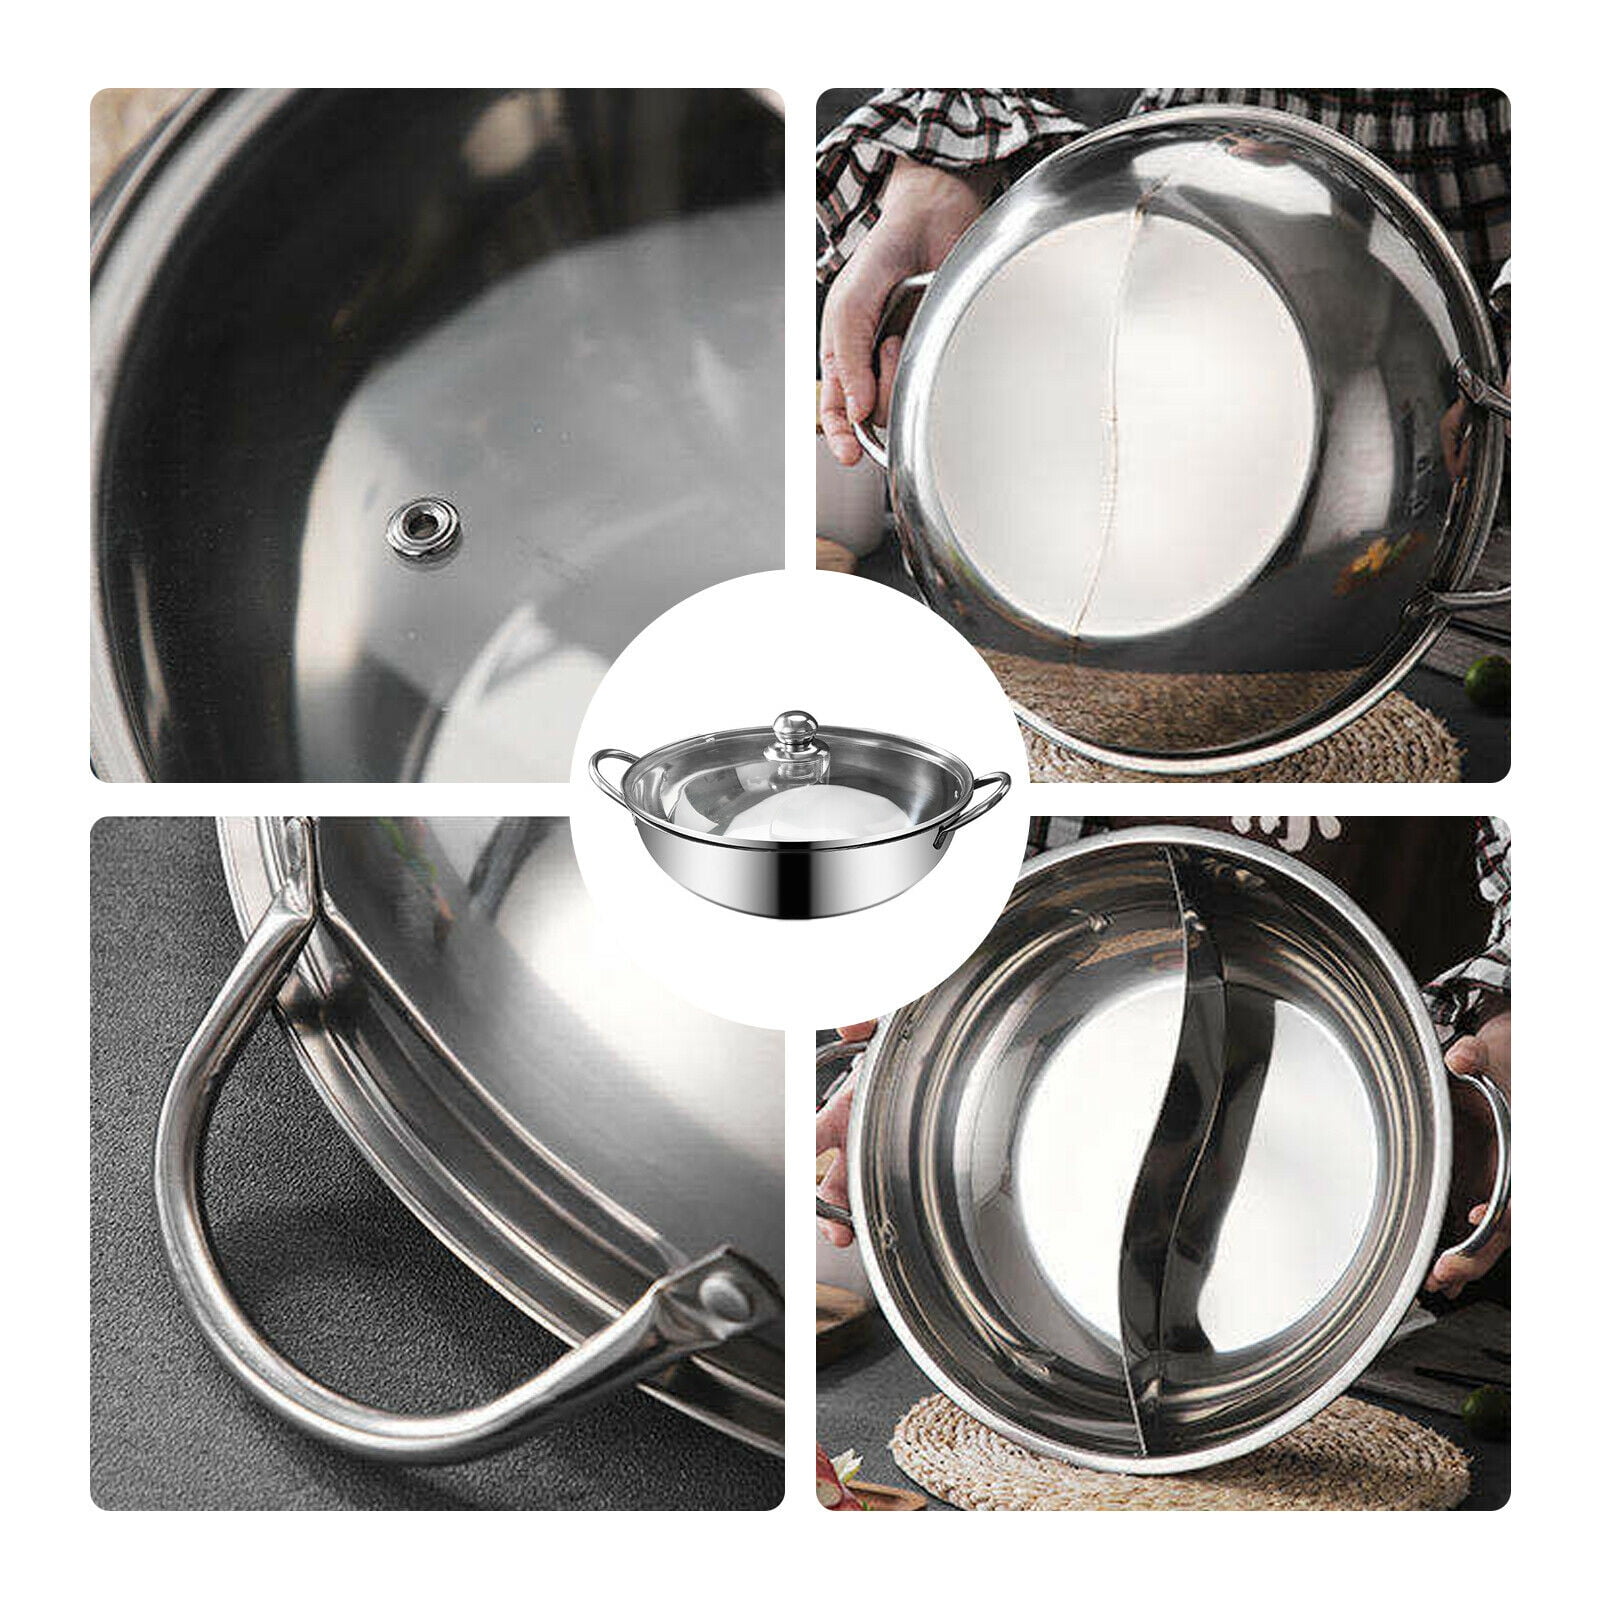 Steel Pot Hot Pot Shabu Shabu Dual Site Divider Cooking Pot w/ Lid